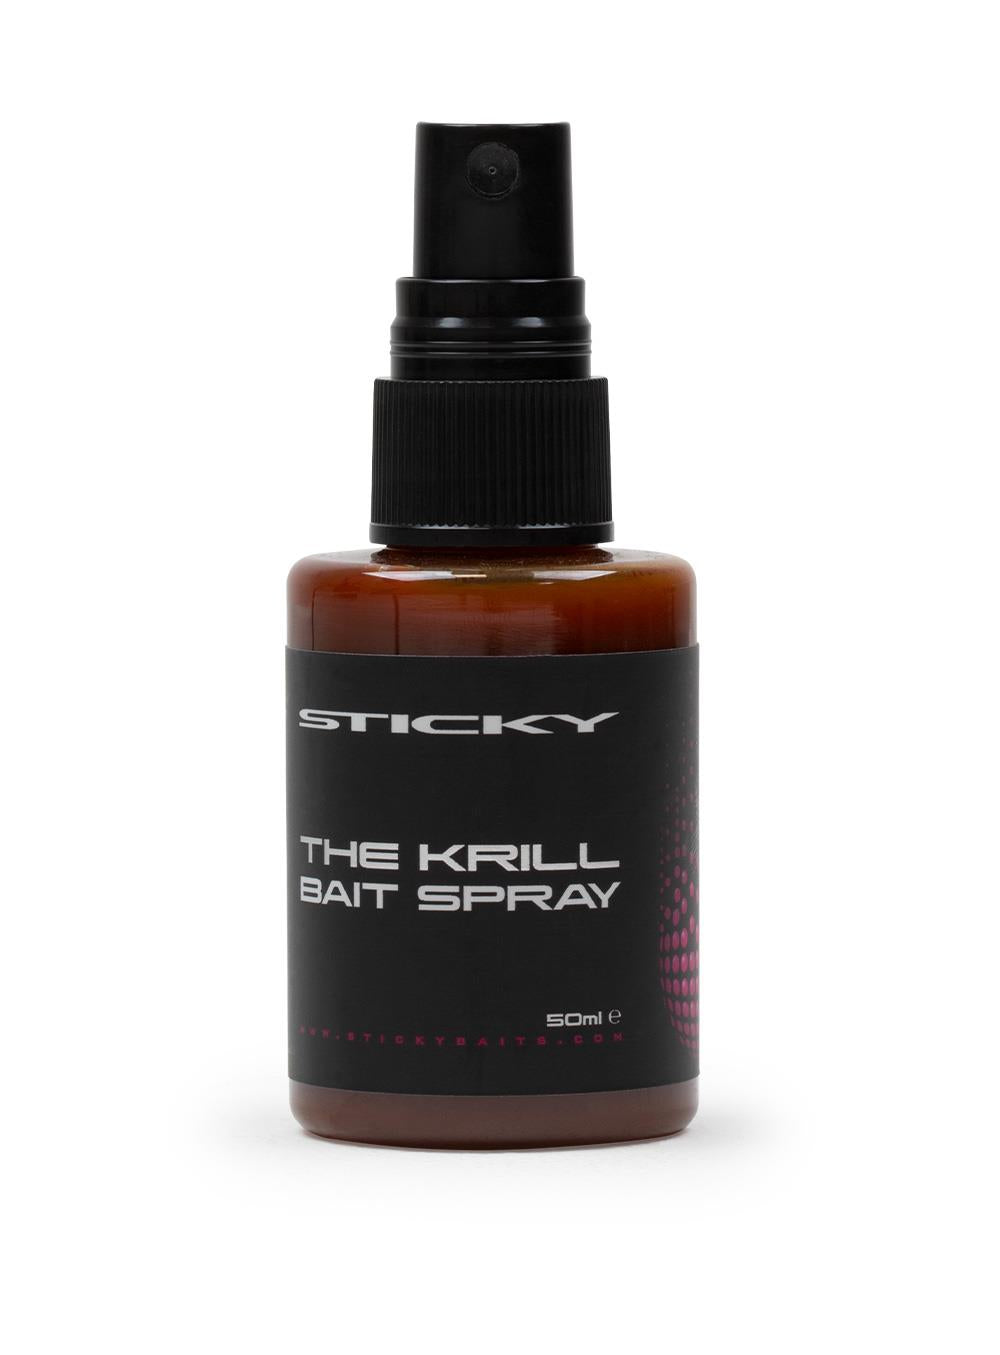 Sticky Baits The Krill Bait Spray 50ml